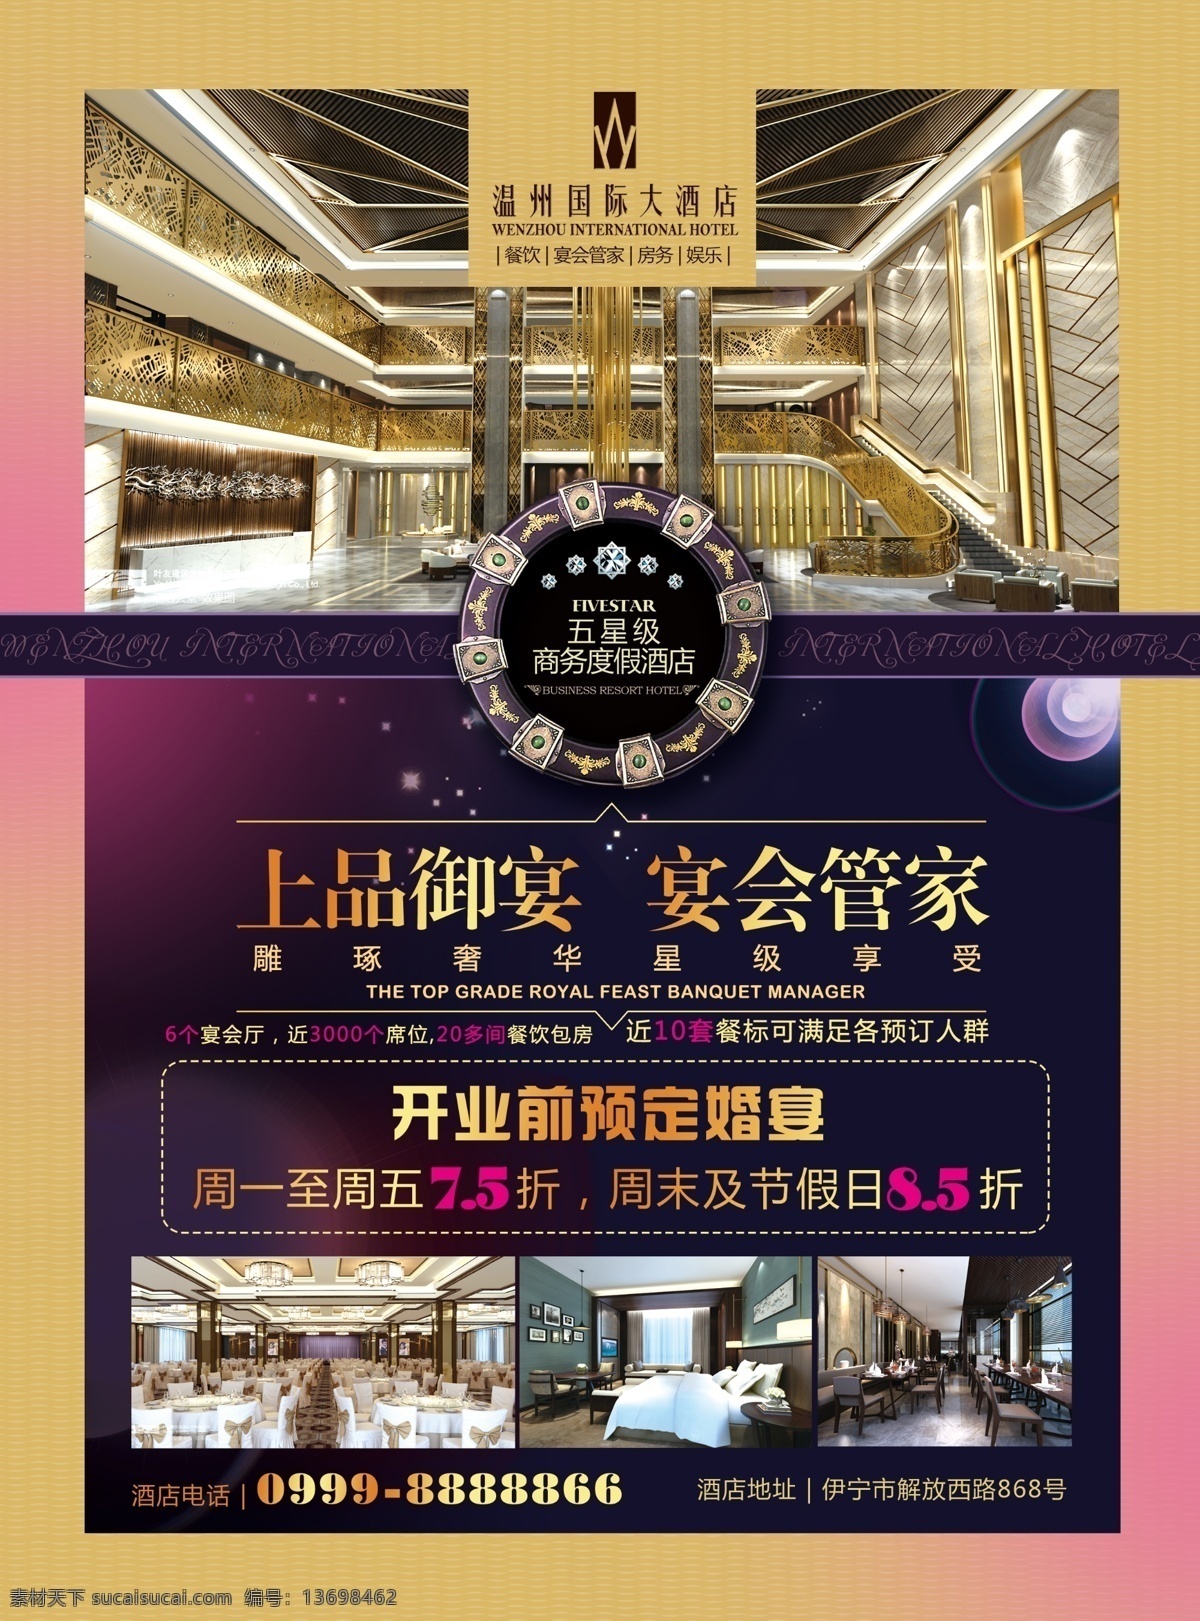 温州 国际酒店 ps 酒店海报设计 光源素材 简约 大气 欧式 古典 背景素材 复古 典雅 酒店 广告宣传 黑色